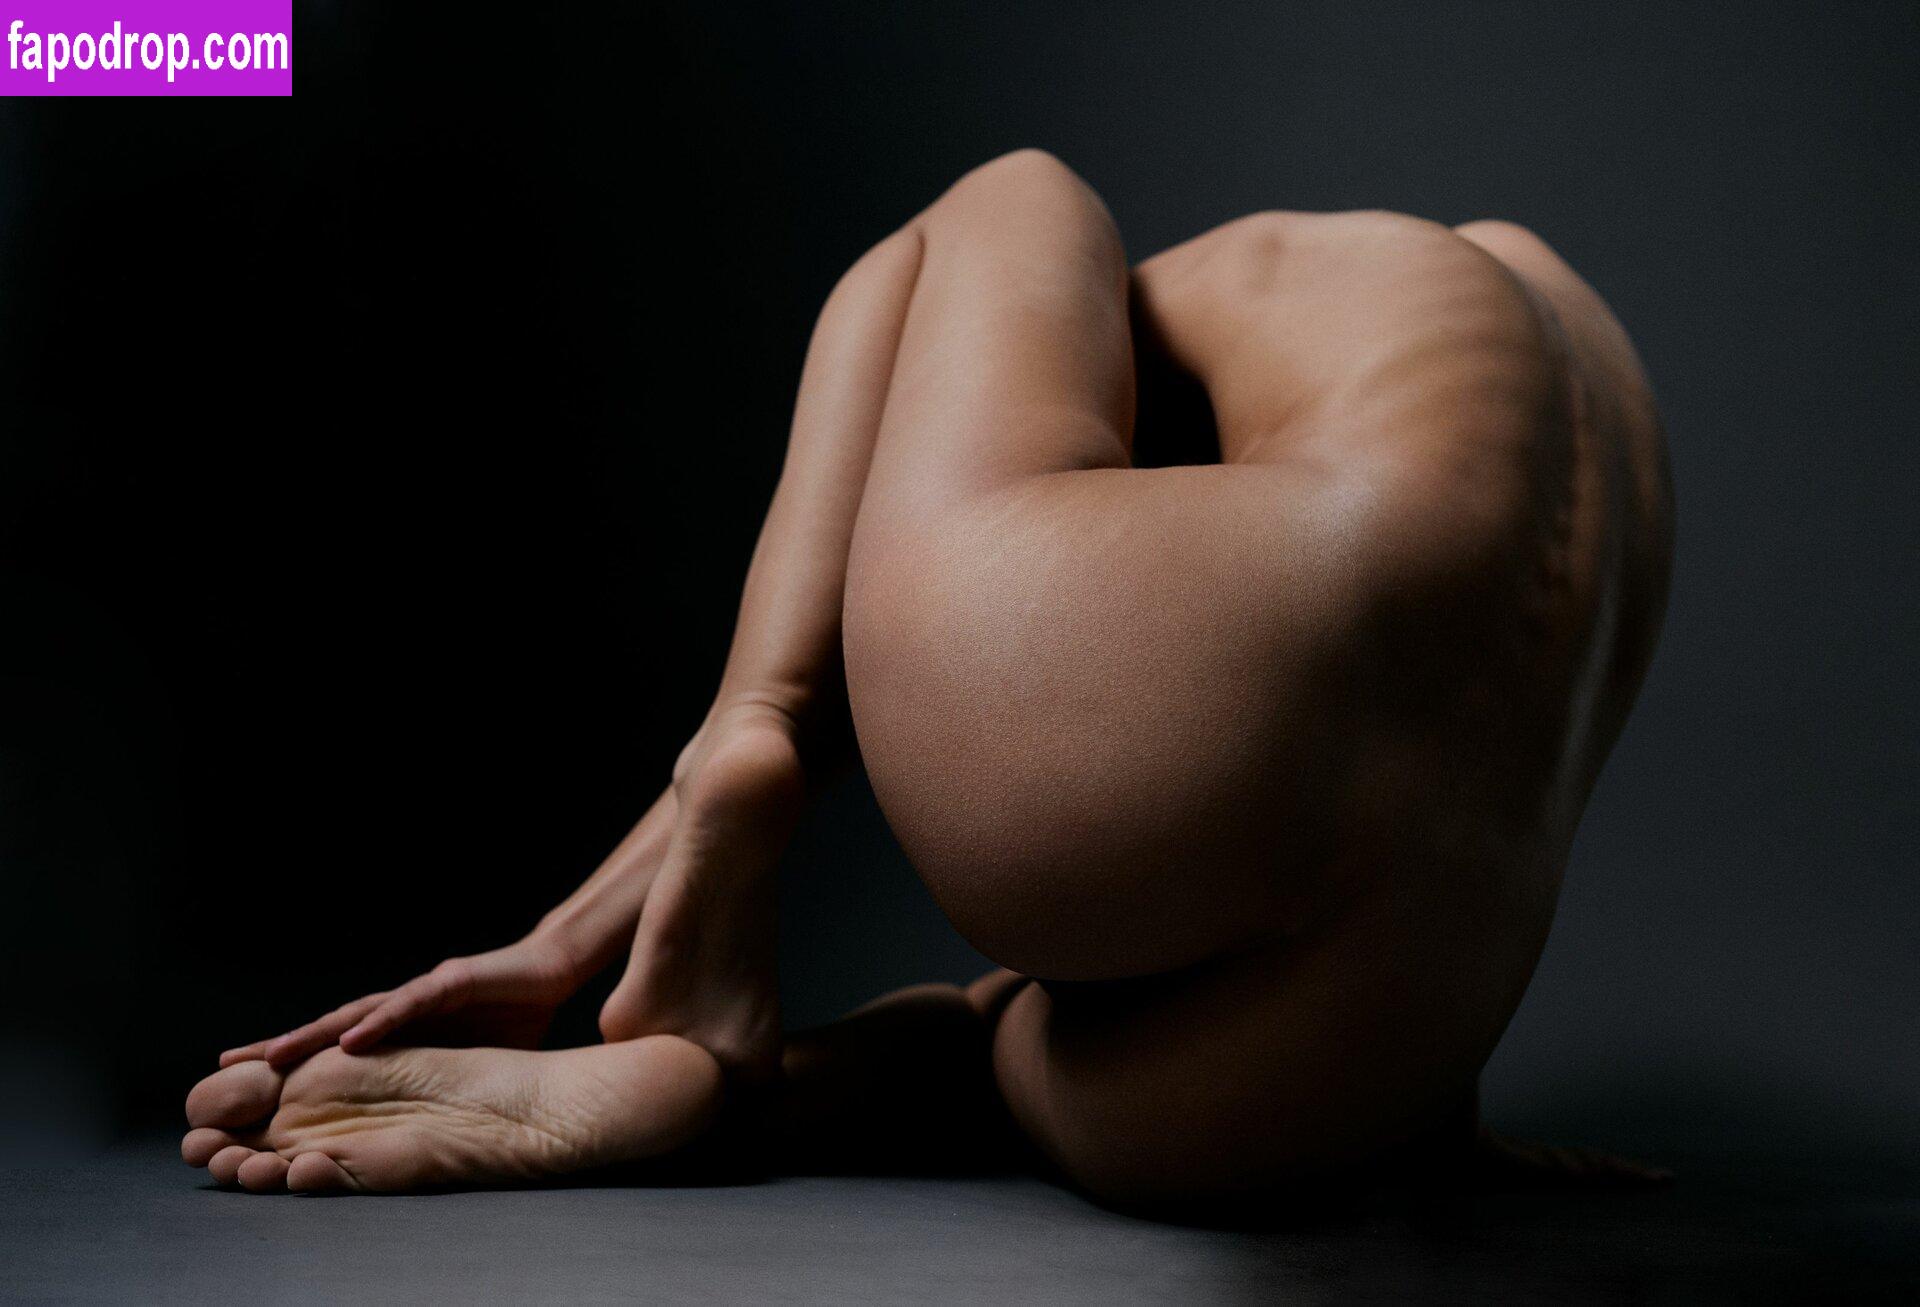 Julia Slip / juliaslip_nu / nudityslip leak of nude photo #0155 from OnlyFans or Patreon